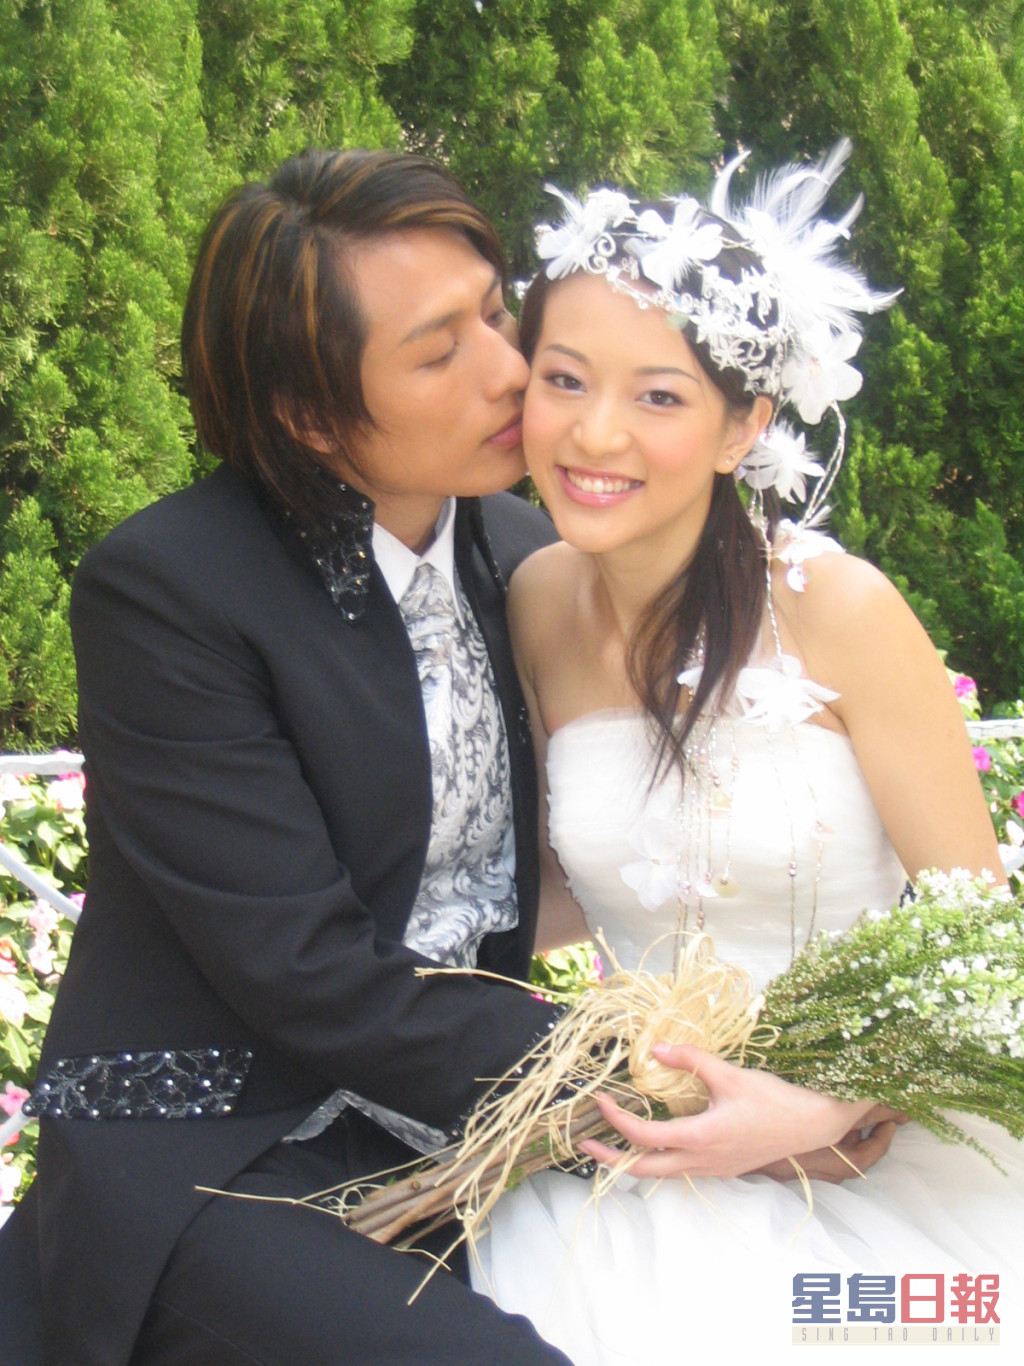 林雅詩在2005年嫁鋼鐵生意商人溫文英，婚後退出娛圈，翌年誕下囝囝，做心做家庭主婦。